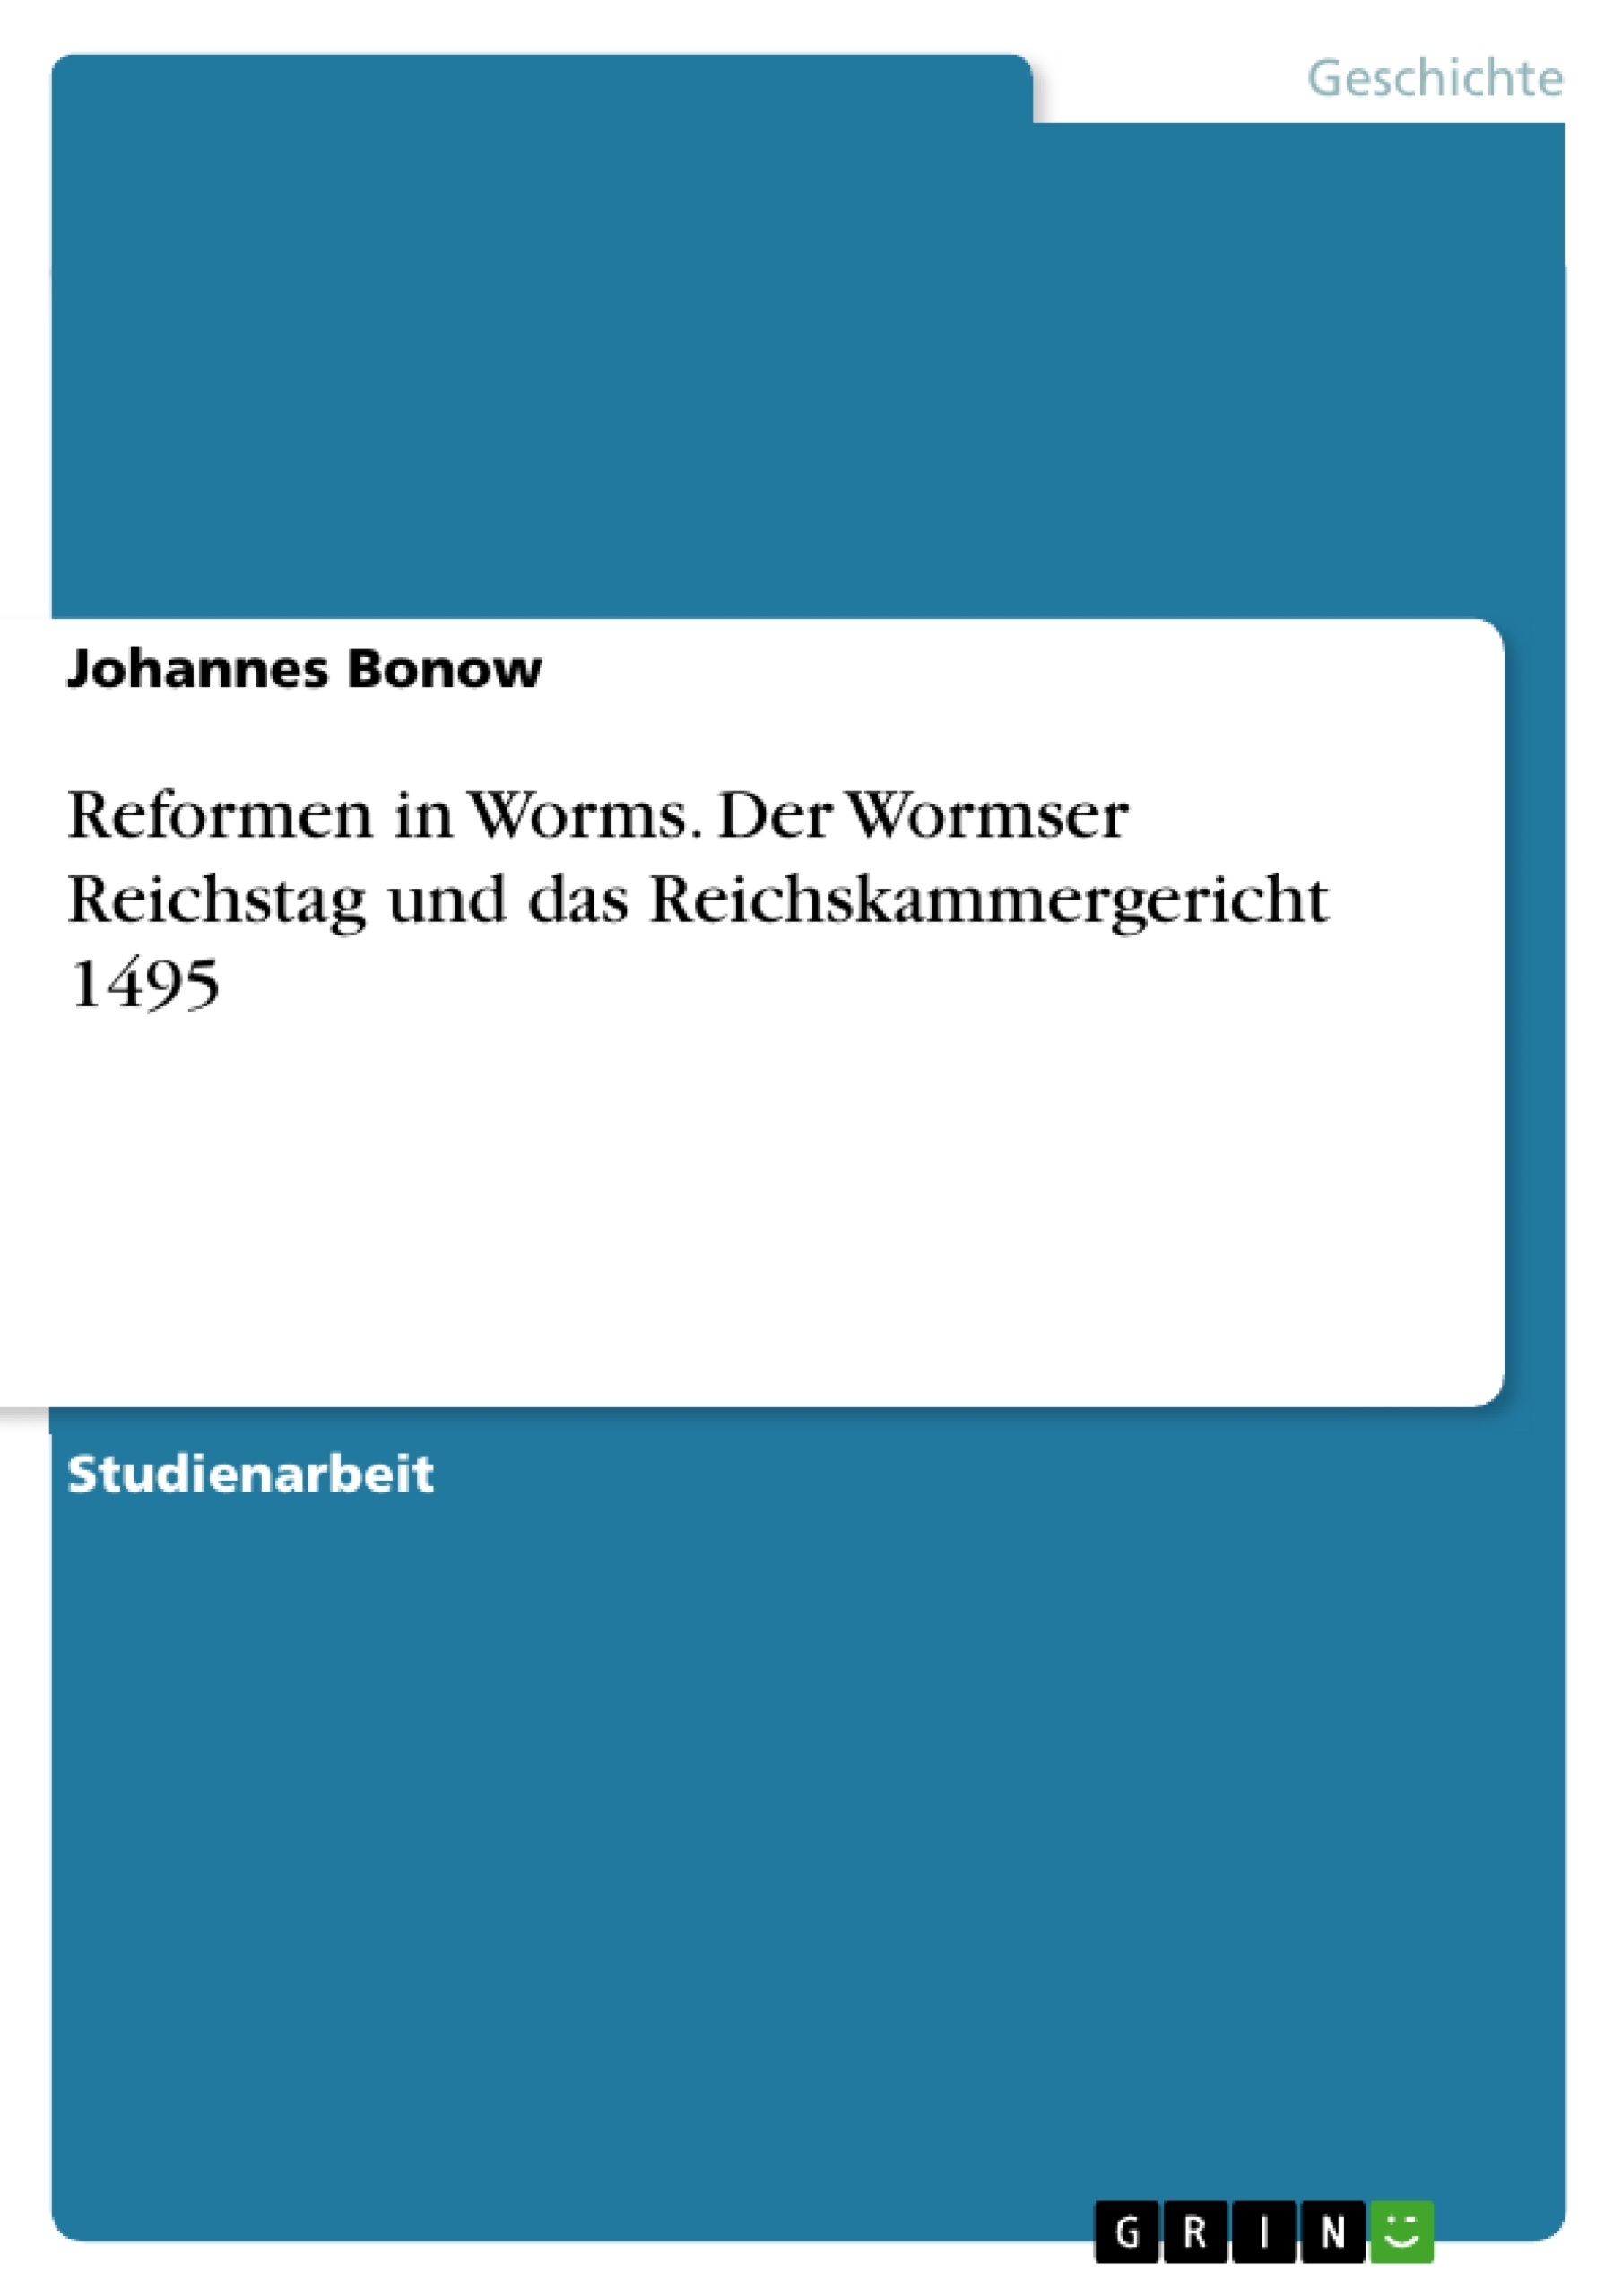 Title: Reformen in Worms. Der Wormser Reichstag und das  Reichskammergericht 1495